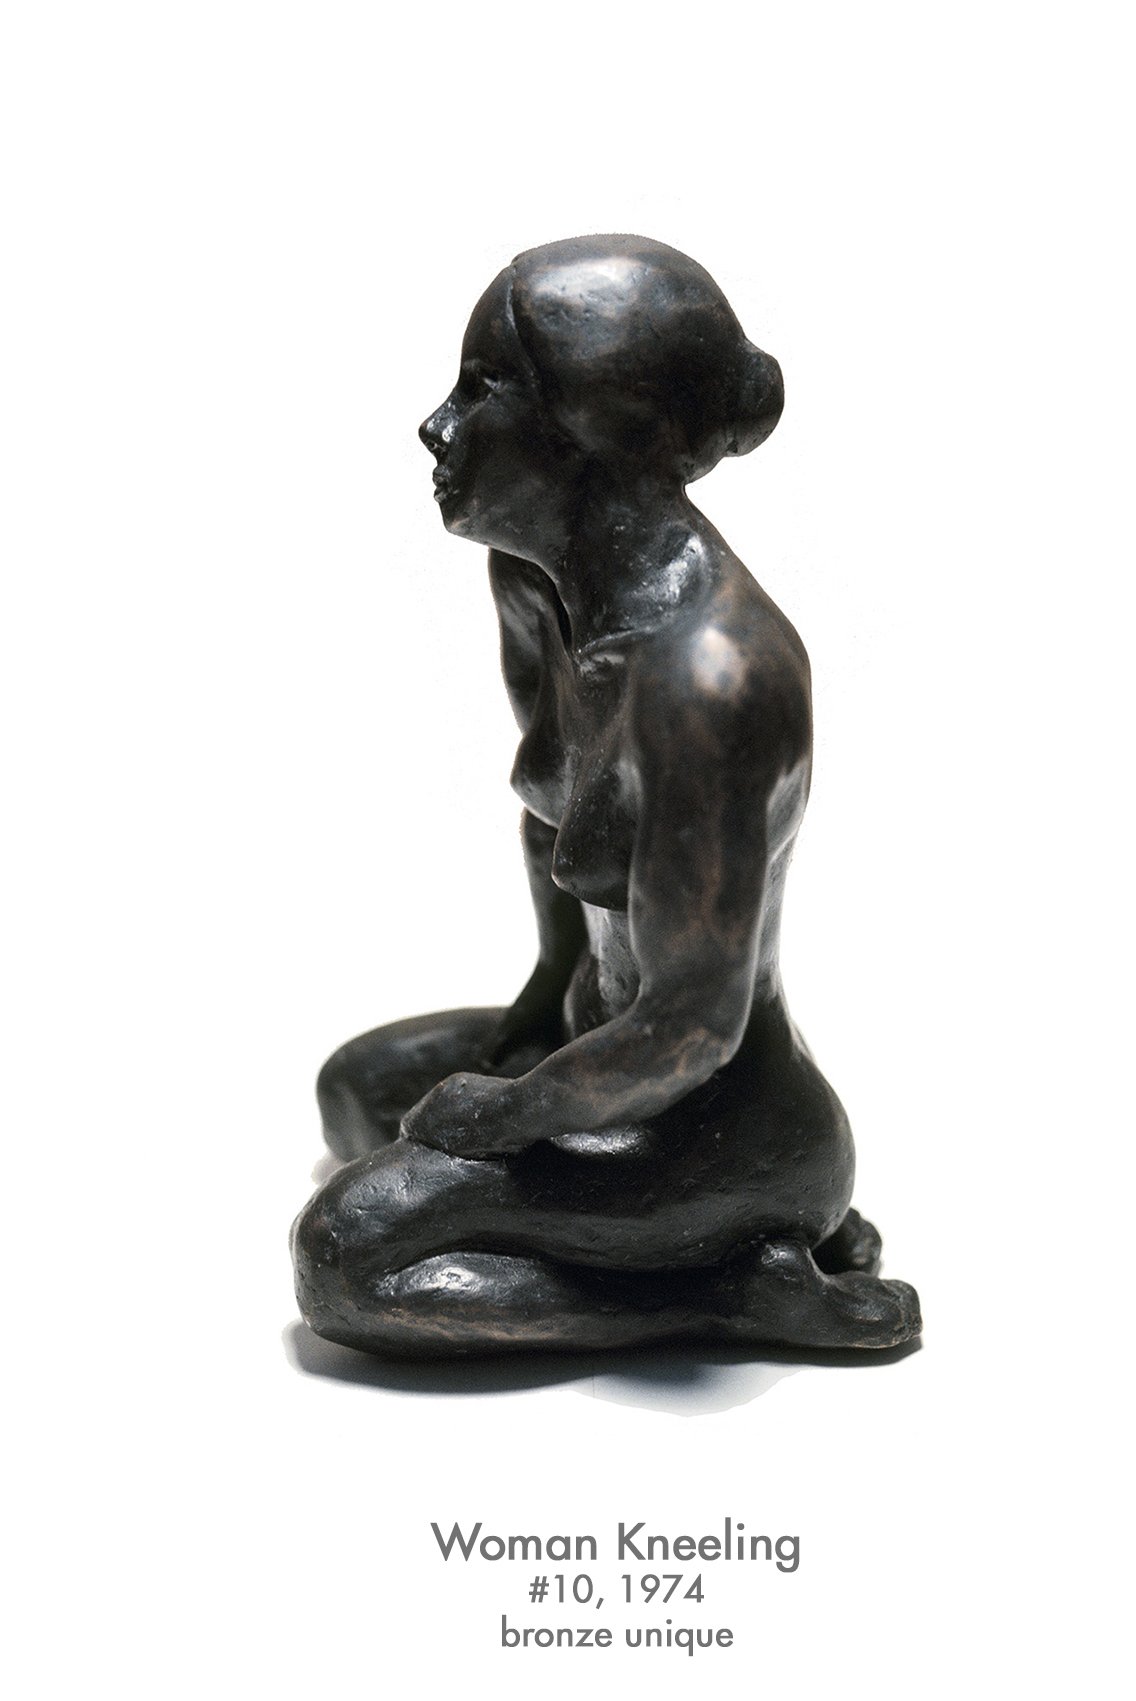 Woman Kneeling, 1974, bronze, #10